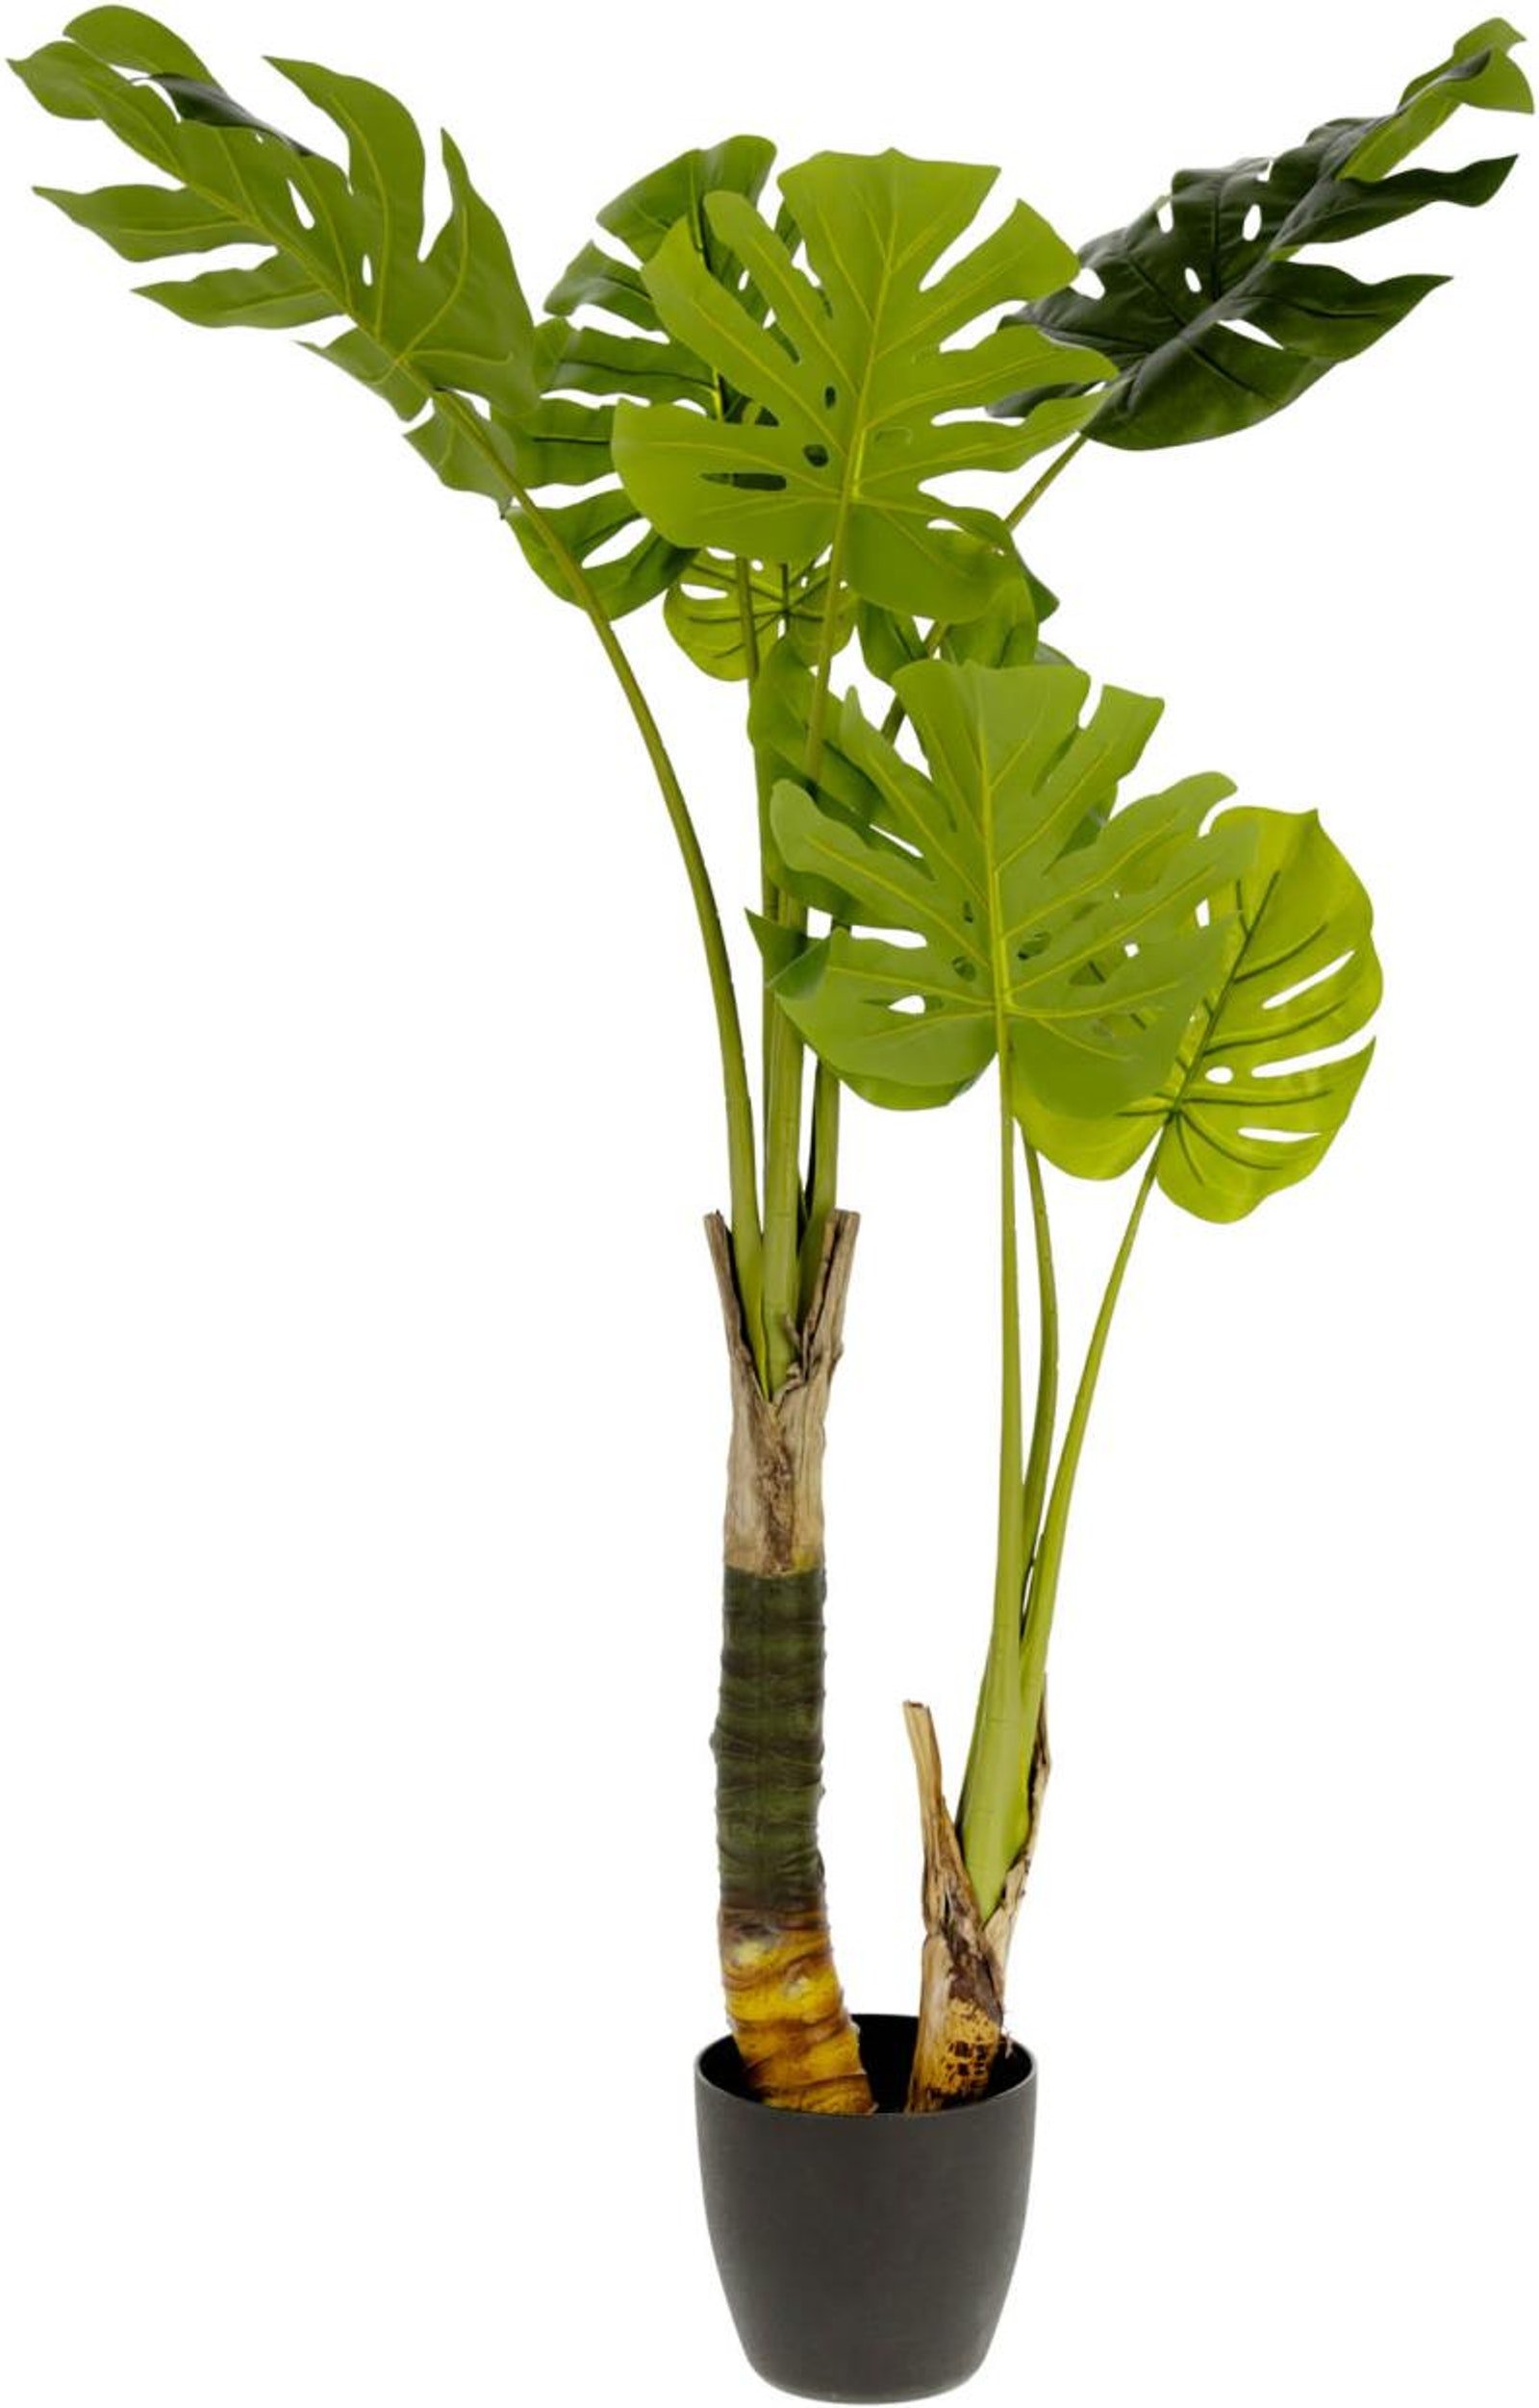 Monstera, Kunstig plante, moderne, kolonial, plast by Kave Home (H: 130 cm. B: 60 cm. L: 60 cm., Grøn/Sort)